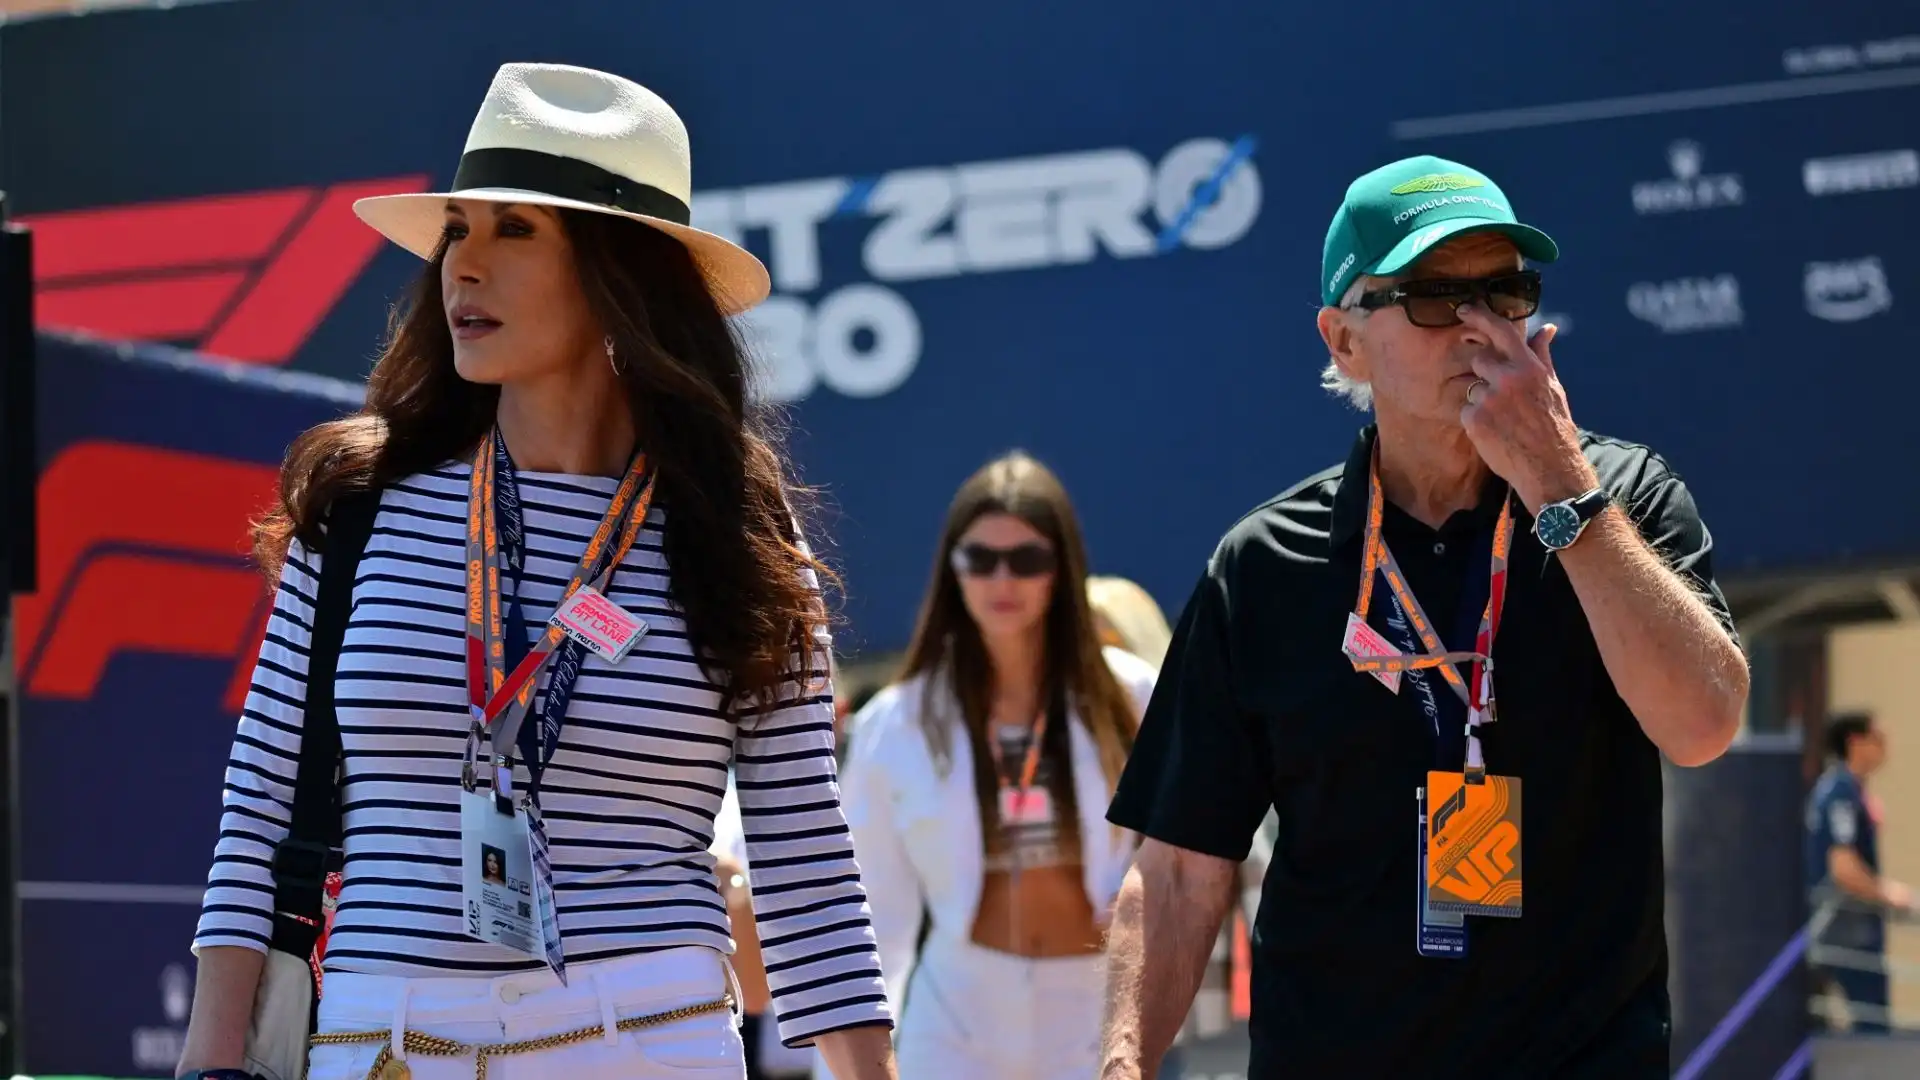 Le due star di Hollywood hanno visitato il paddock di Formula 1